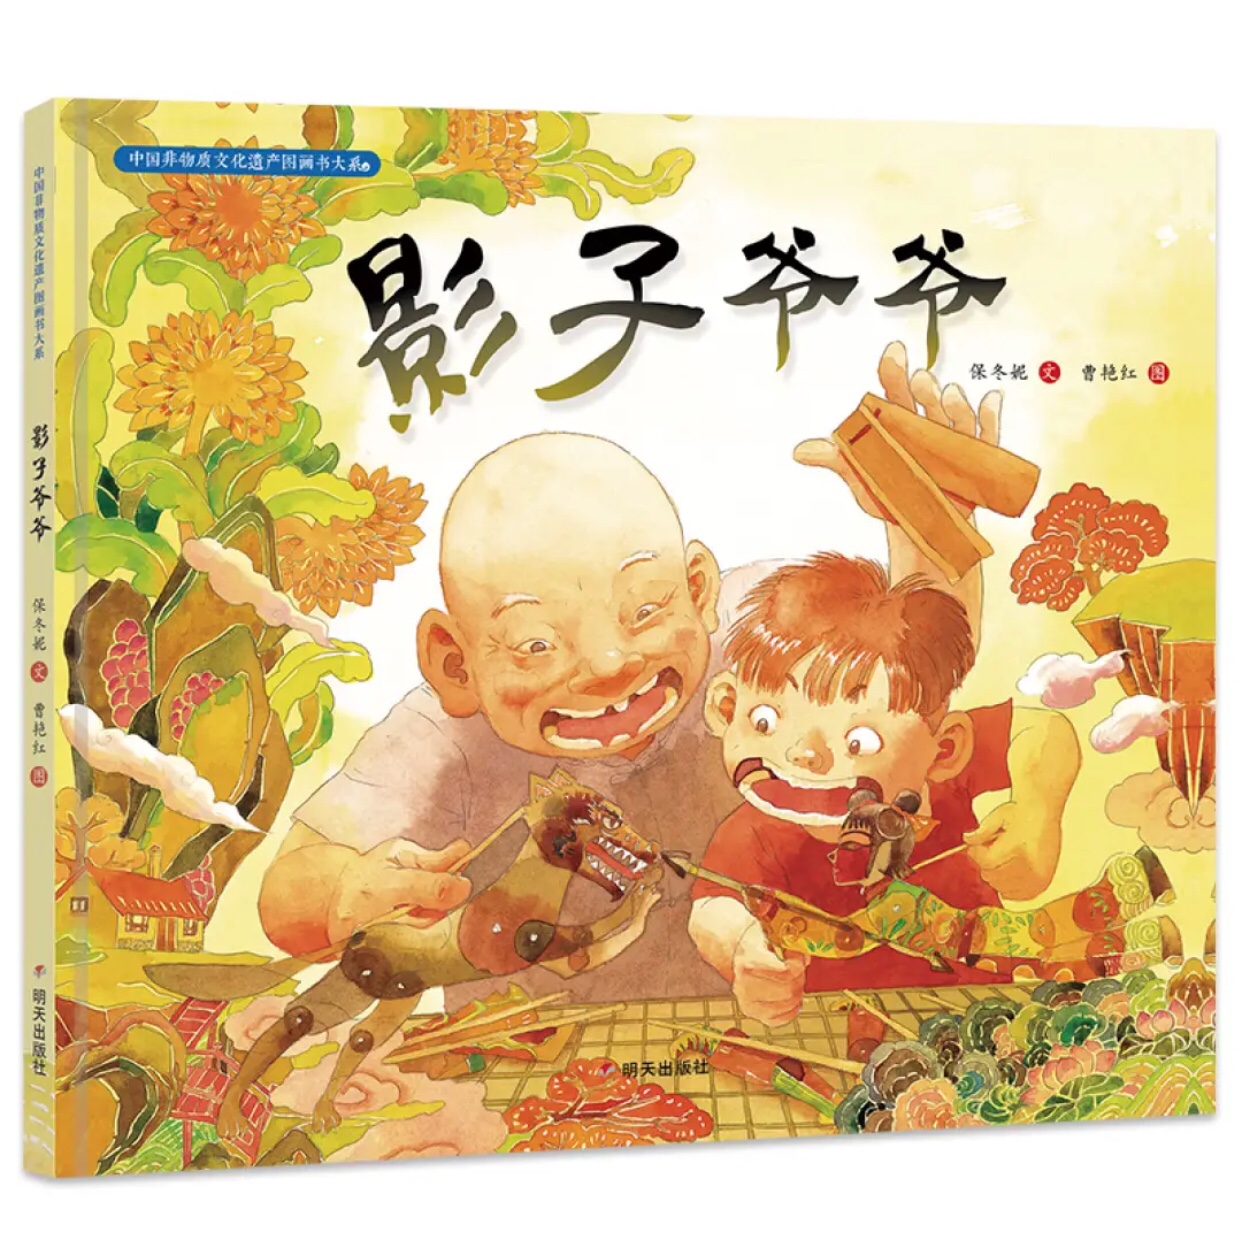 中国的文化，经典，现在的娃娃知道的太少太少，只能通过阅读来了解了。买书，读起来。